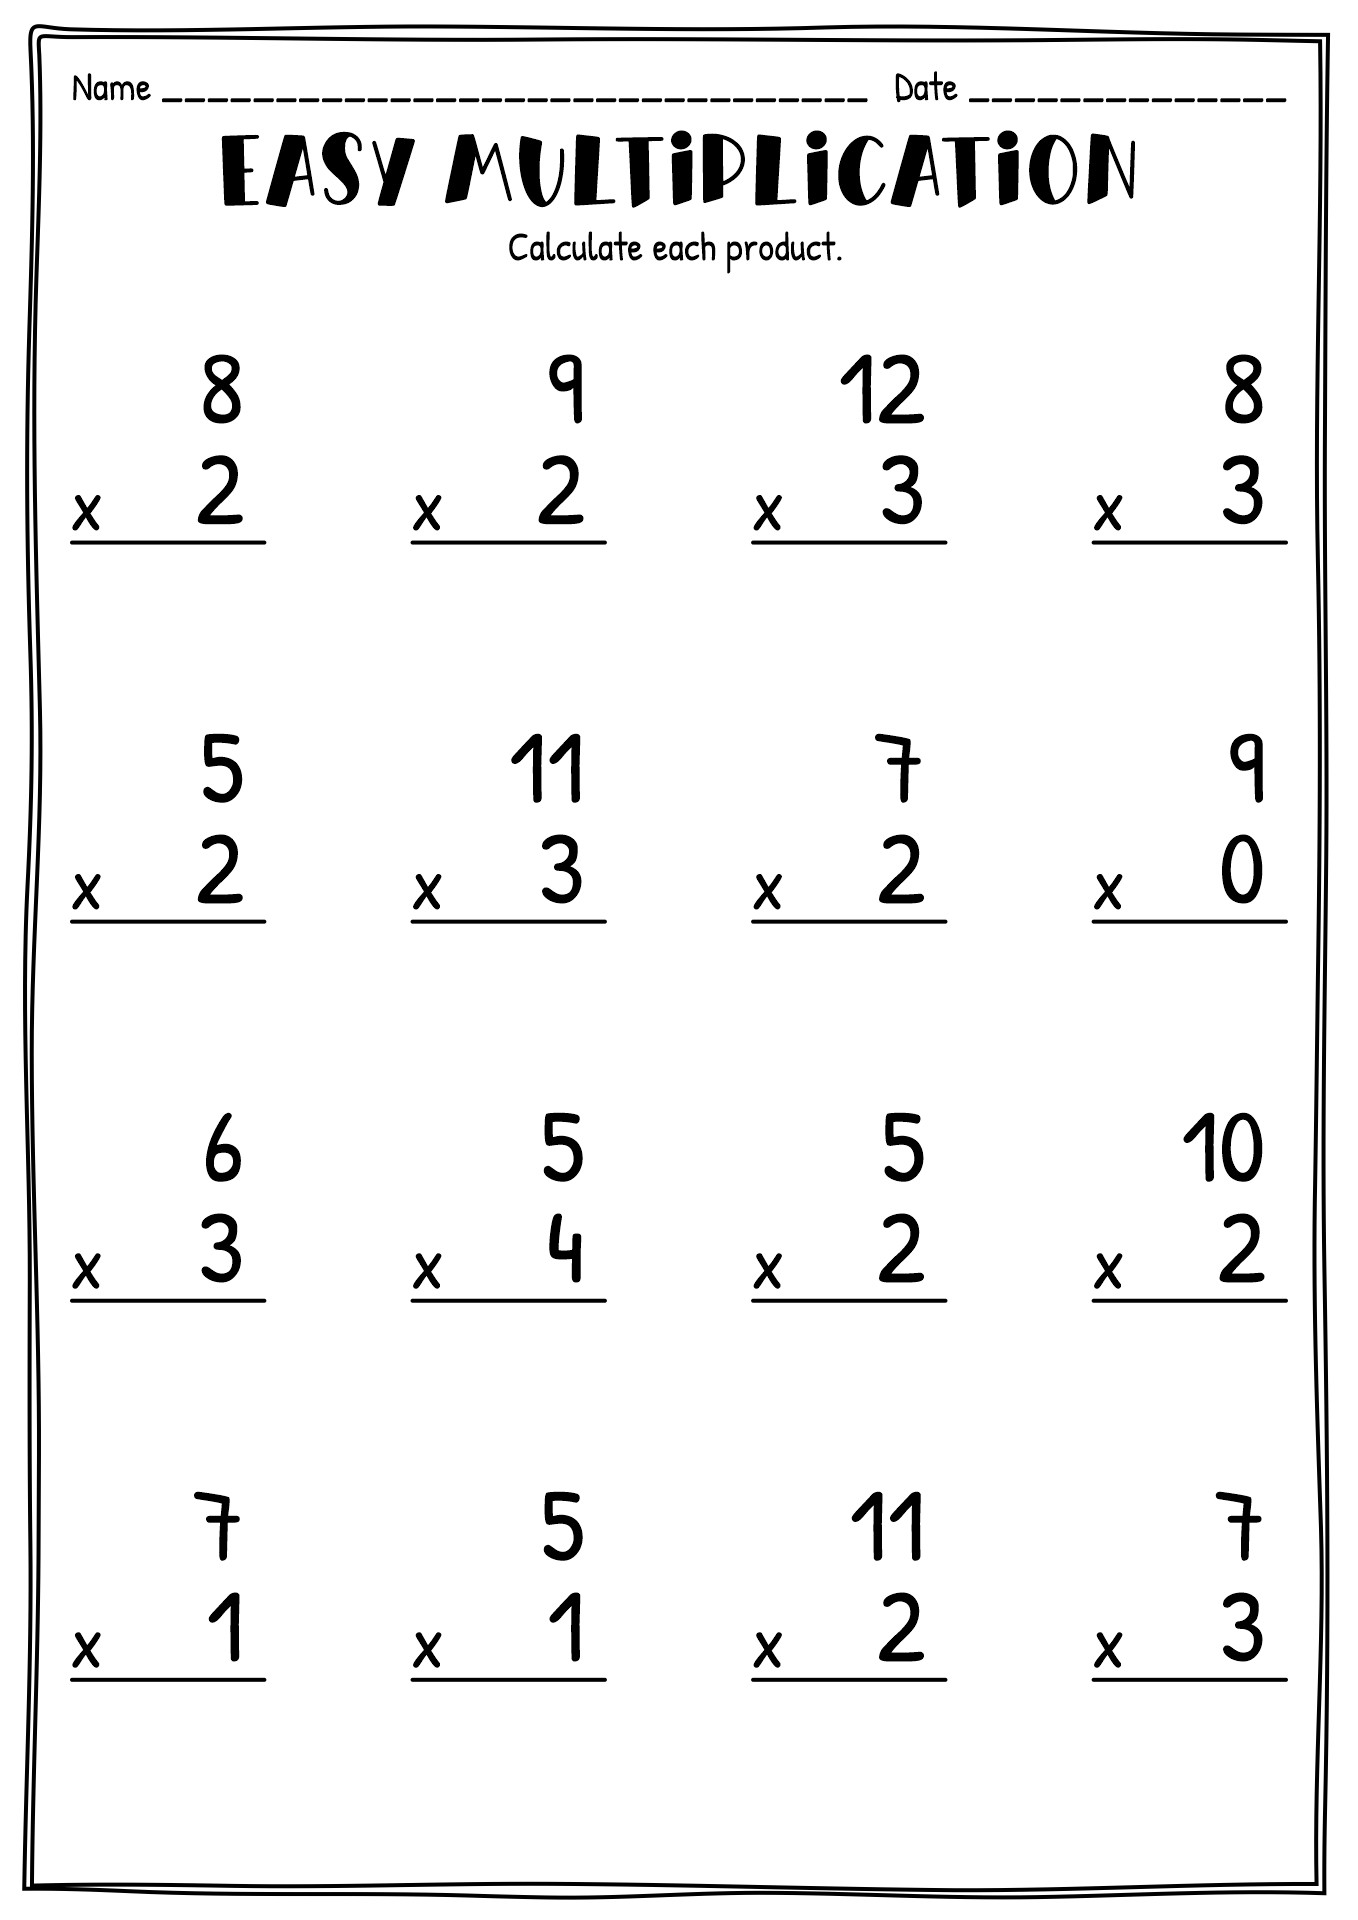 11 Best Images of Multiplication Worksheets 4S - 1 ...